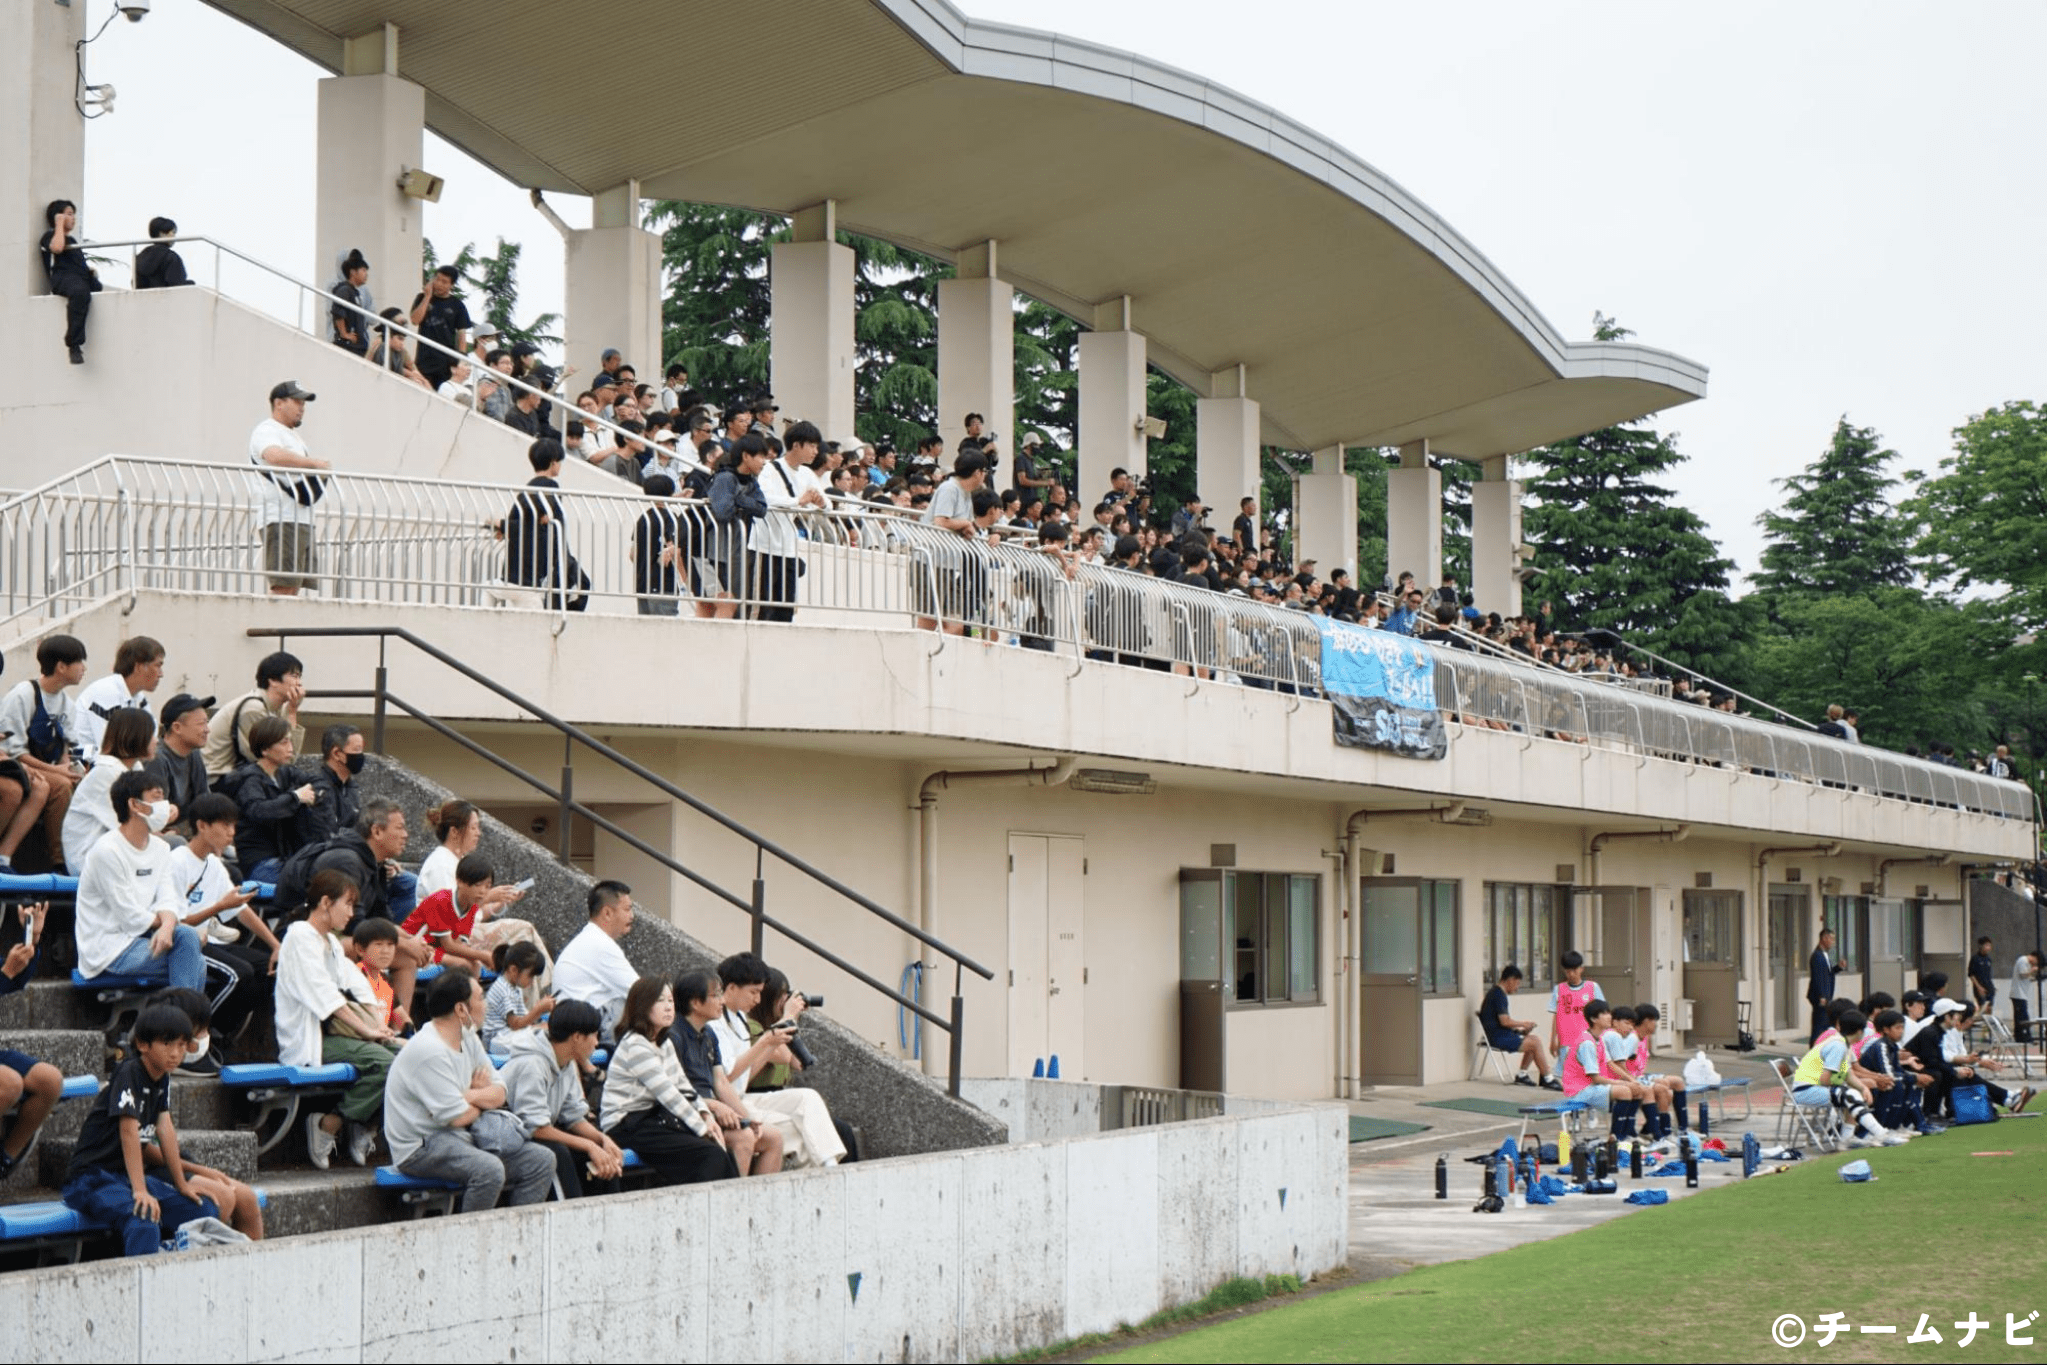 「チームナビ」が協賛した第15回神奈川県クラブジュニアユースサッカー選手権大会が開催されました！